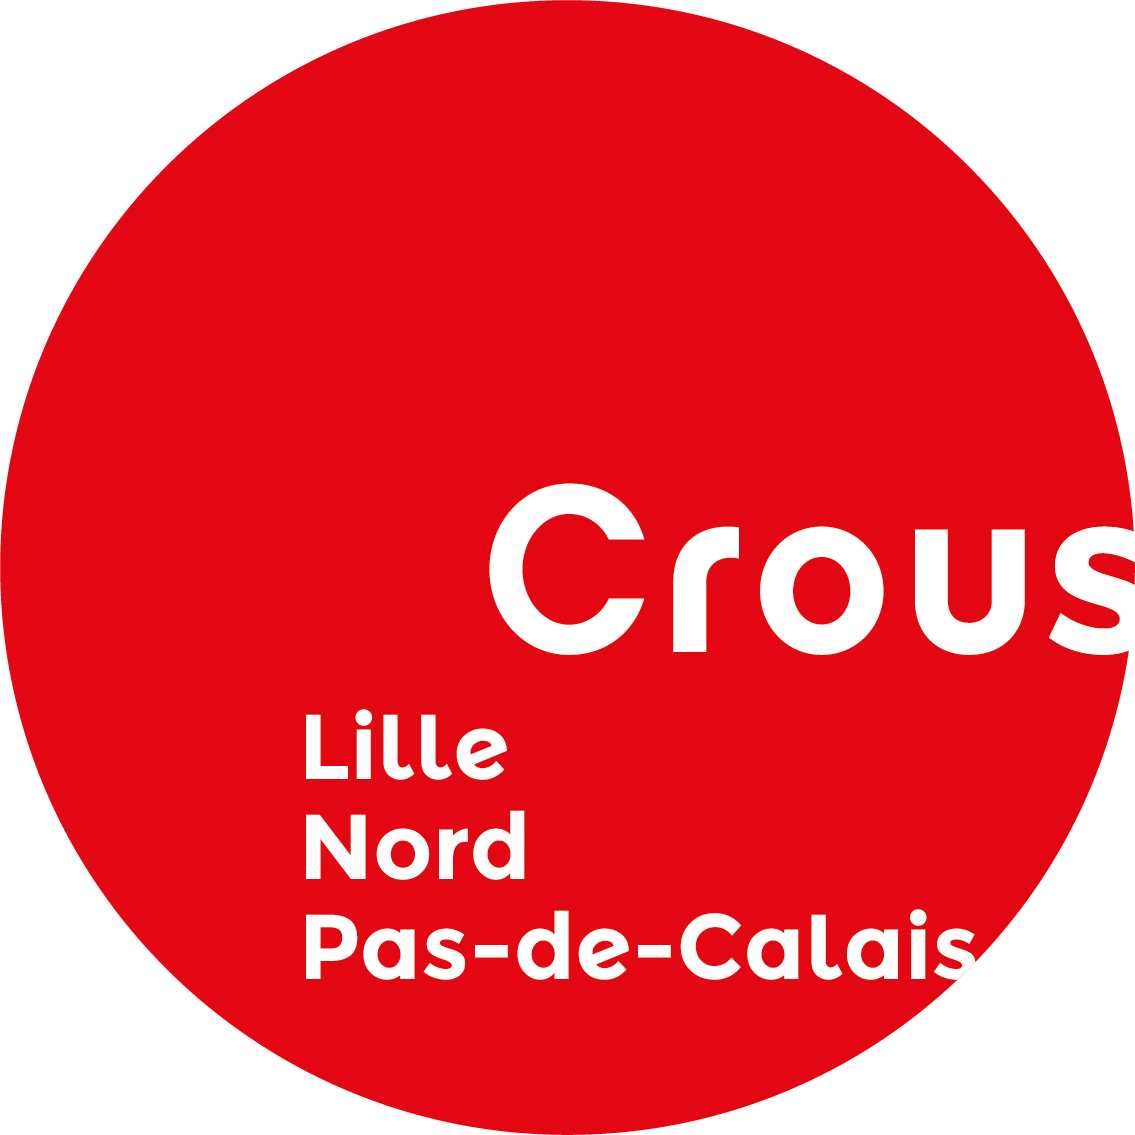 Crous-logo-lille-nord-pas-de-calais